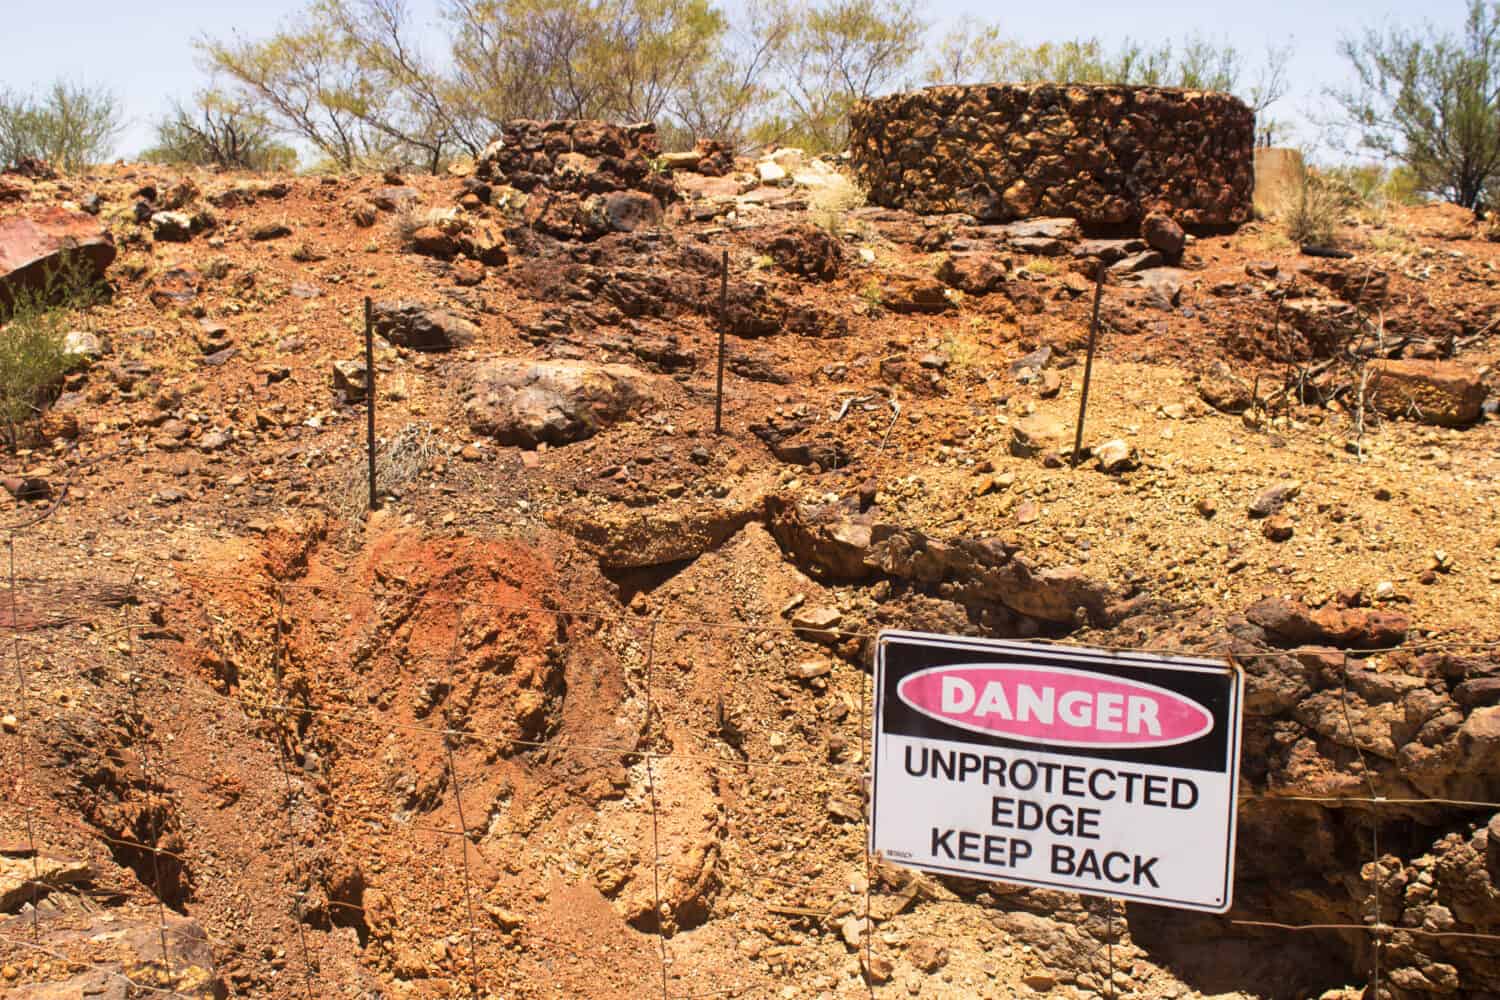 Mattoni antichi ricoprono il terreno in una città fantasma mineraria dell'entroterra australiano